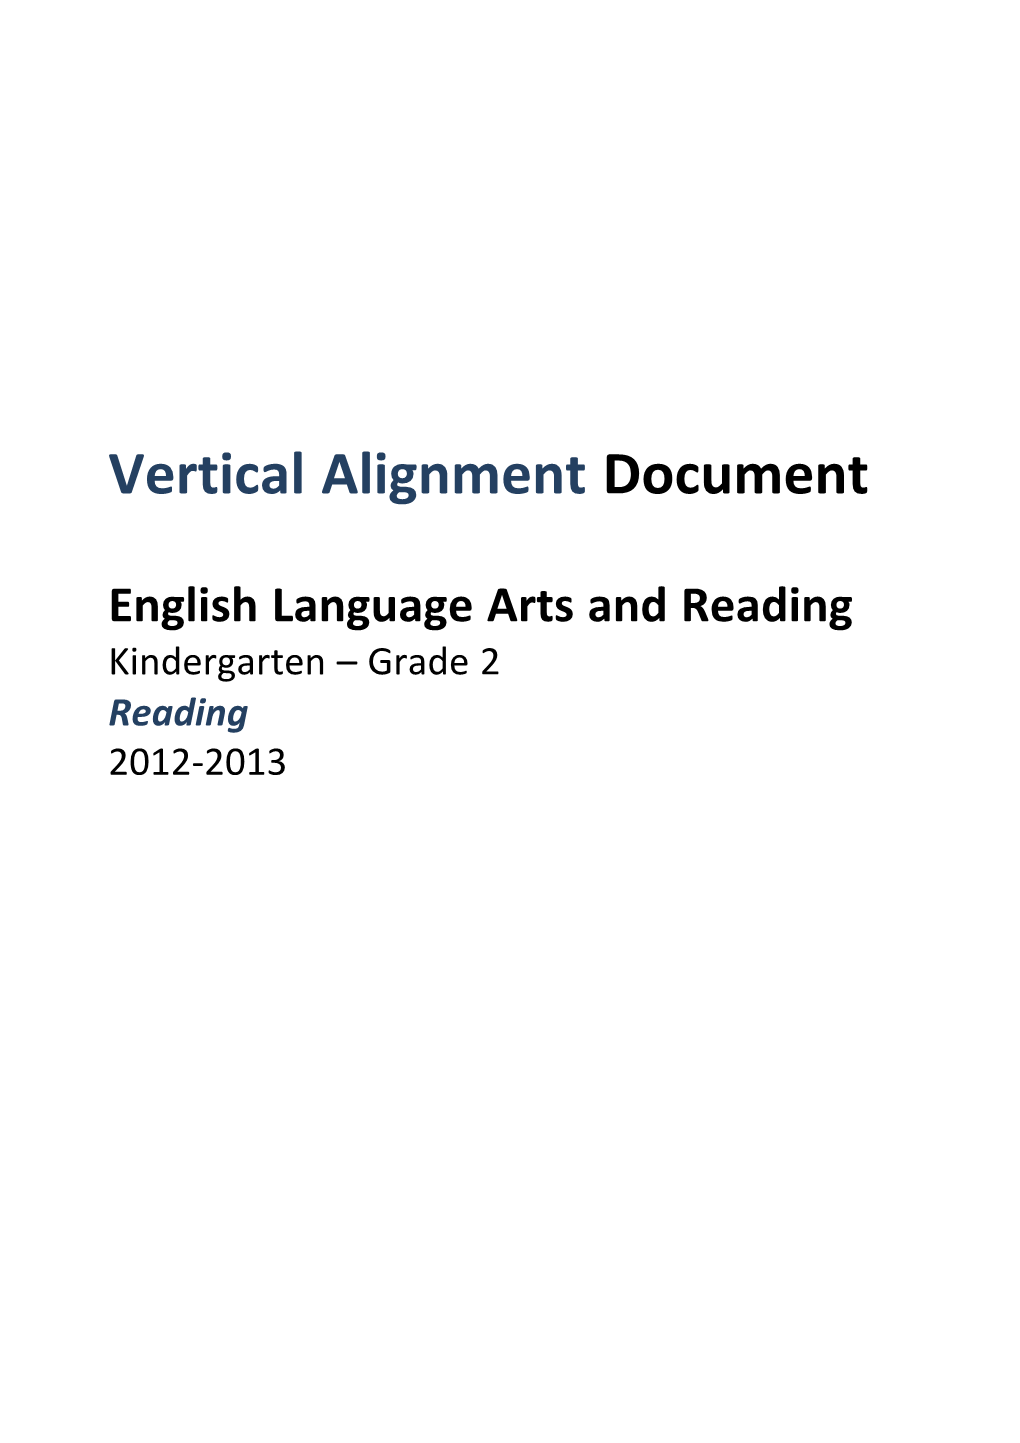 Grades 00K-02 ELAR VAD Reading 10-11